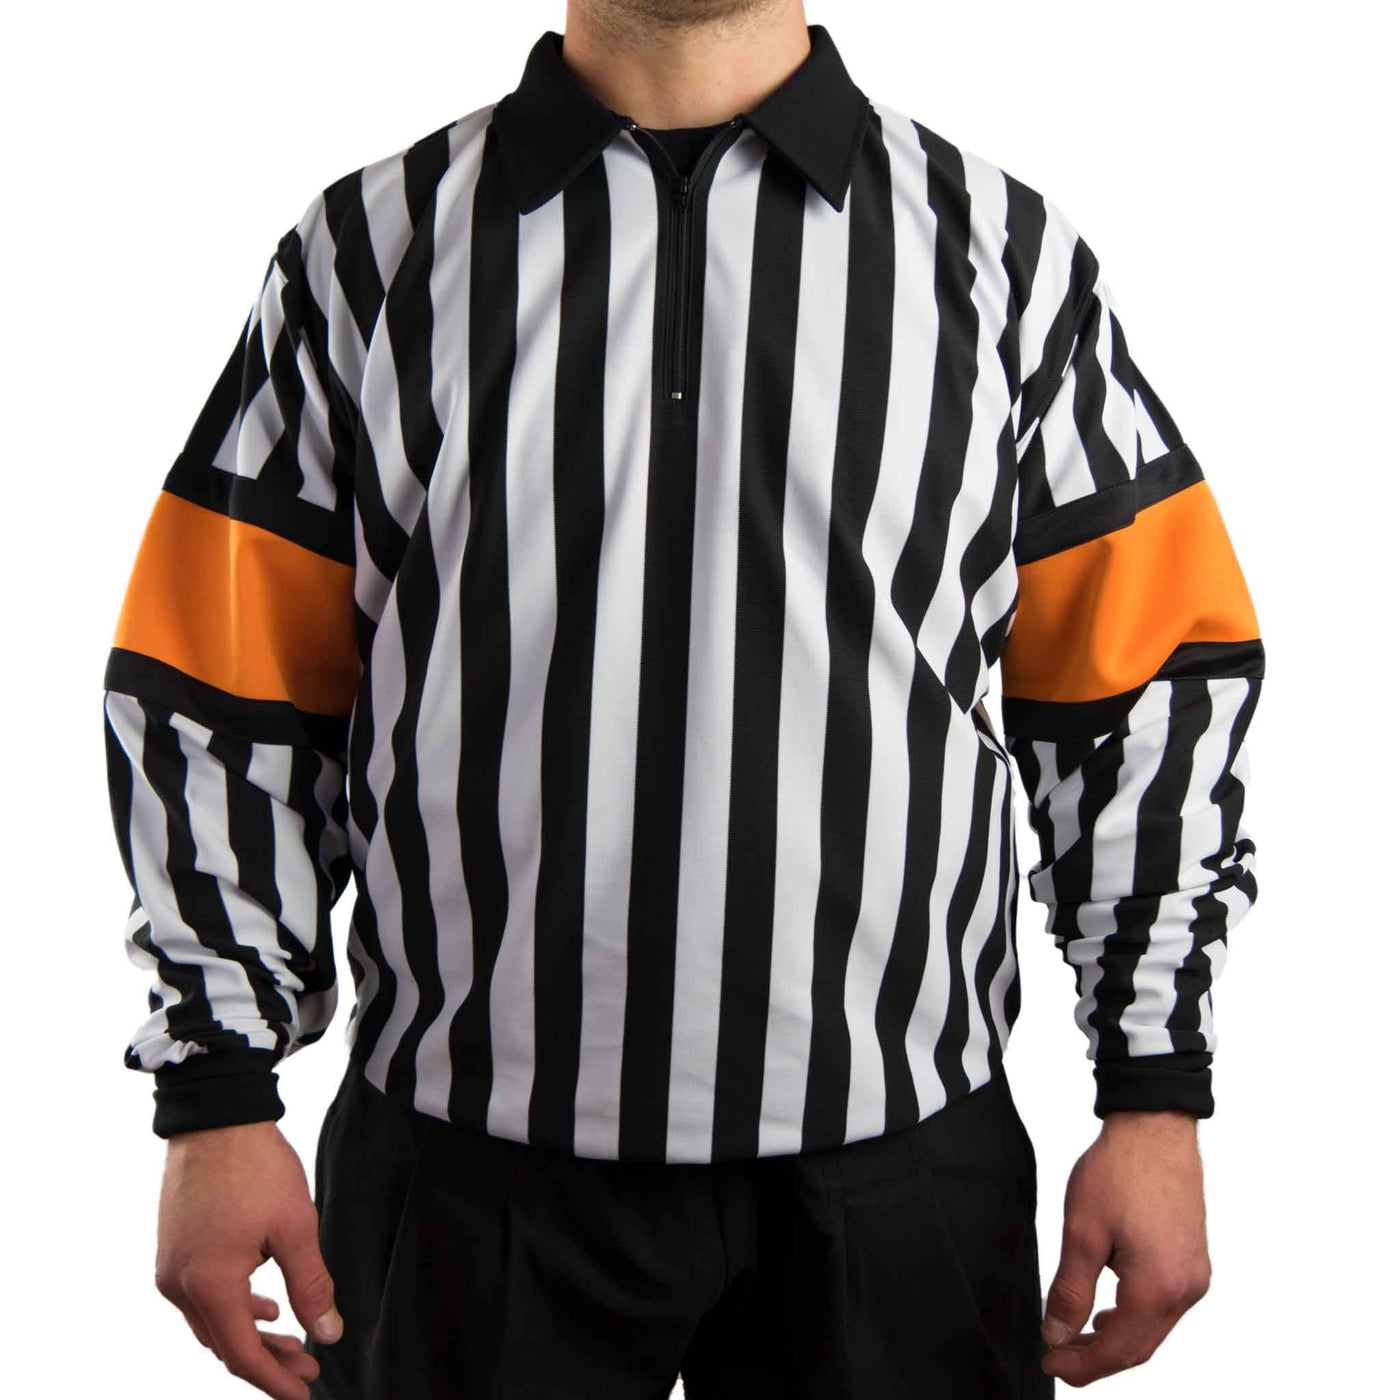 Hockey Referee Shirts Force Pro Orange Armbands